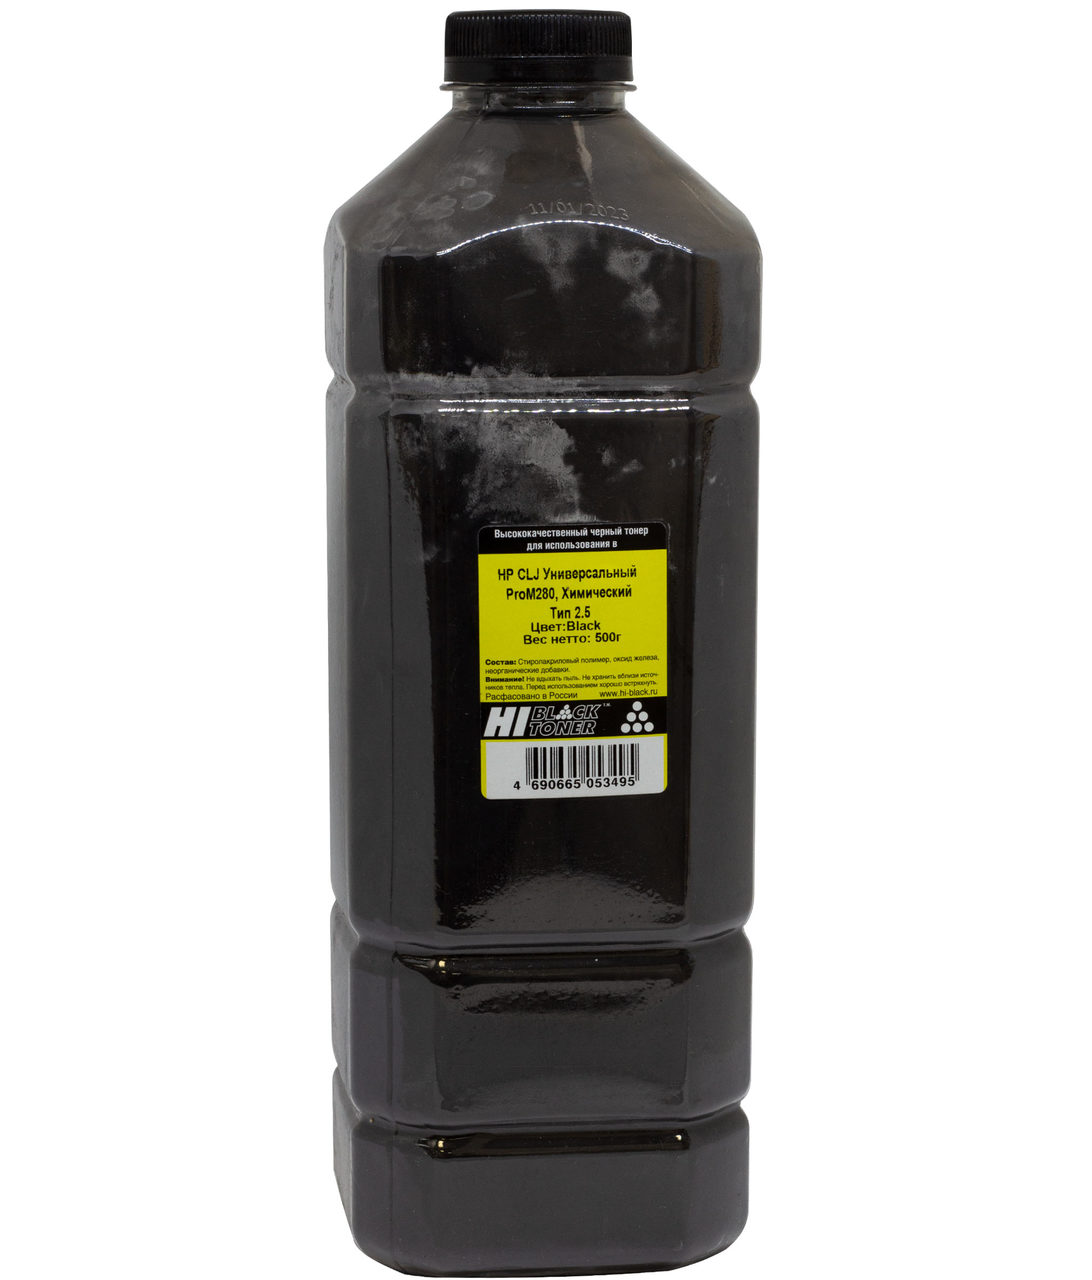 Тонер Hi-Black Универсальный для HP CLJ ProM280,Химический, Тип 2.5, Bk, 500 г, канистра